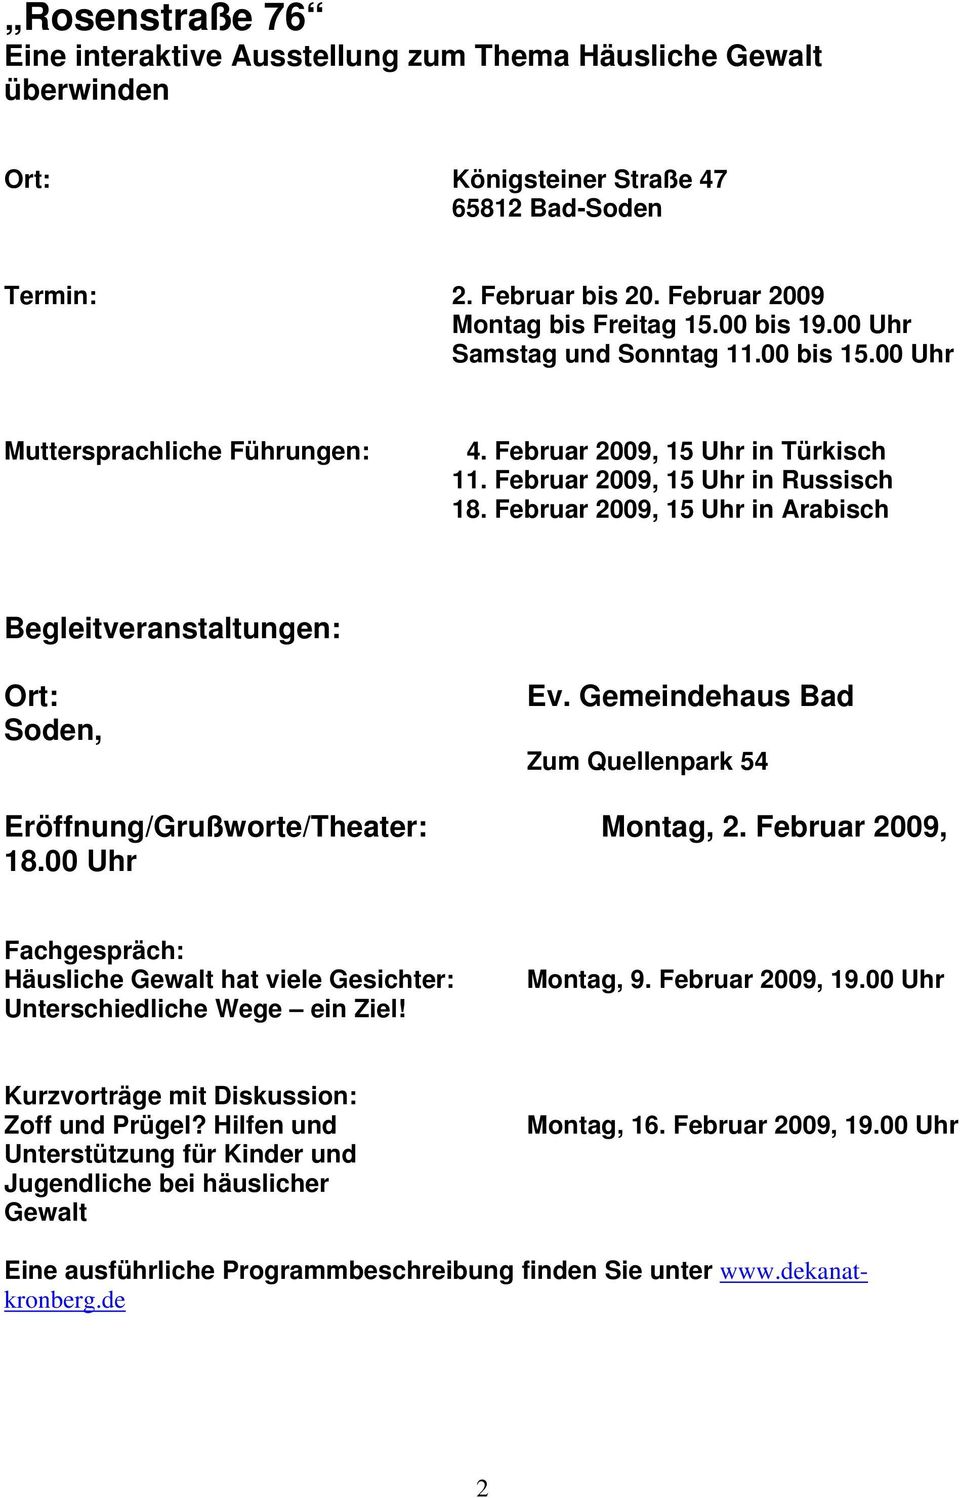 Februar 2009, 15 Uhr in Arabisch Begleitveranstaltungen: Soden, Ev. Gemeindehaus Bad Zum Quellenpark 54 Eröffnung/Grußworte/Theater: Montag, 2. Februar 2009, 18.